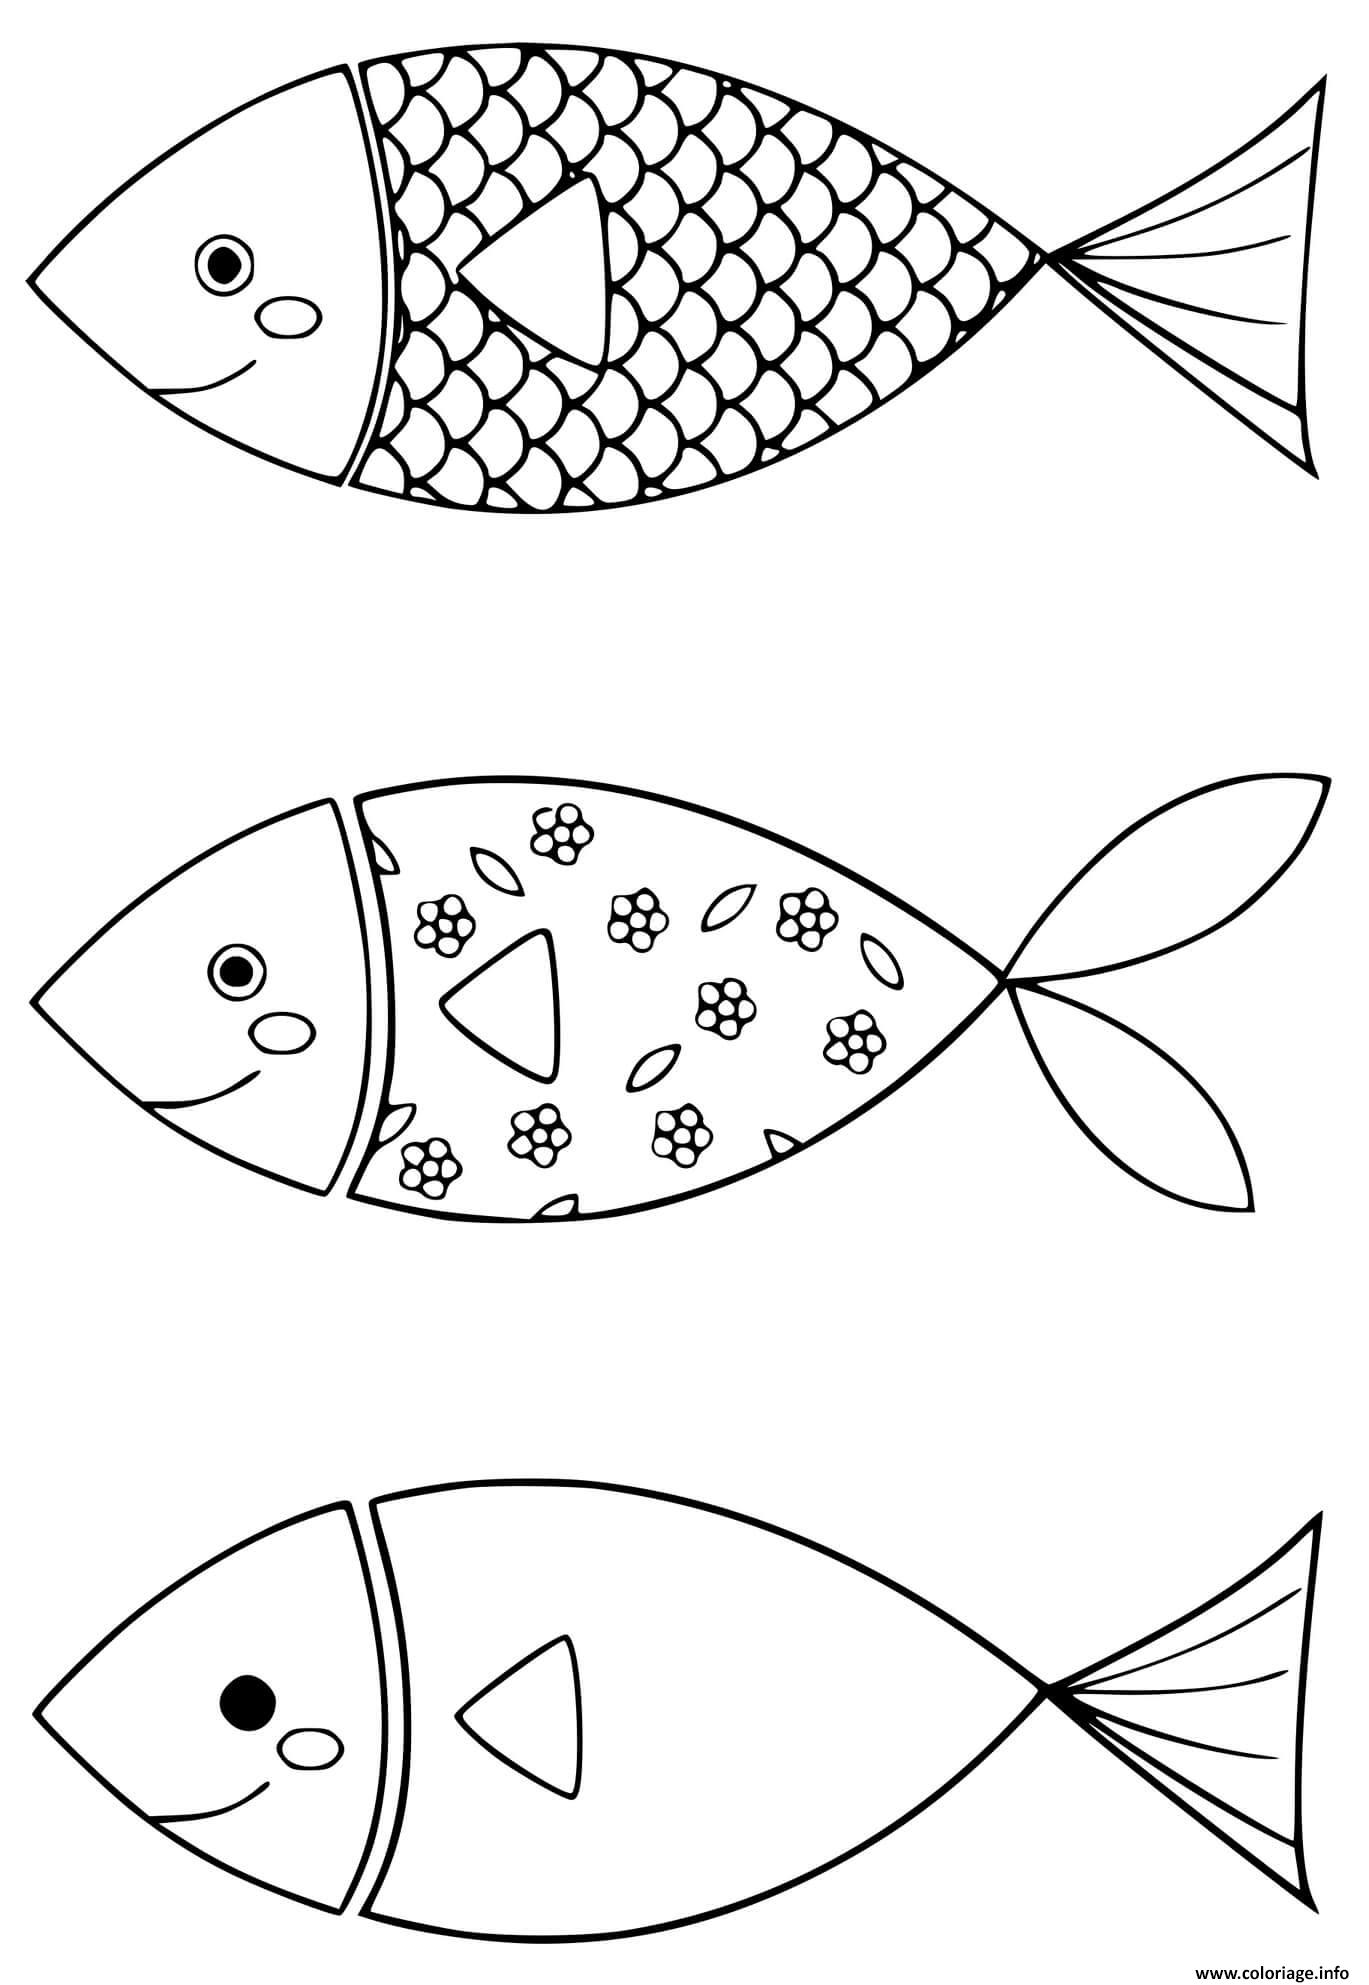 Dessin poisson davril simple de saint jean de monts Coloriage Gratuit à Imprimer